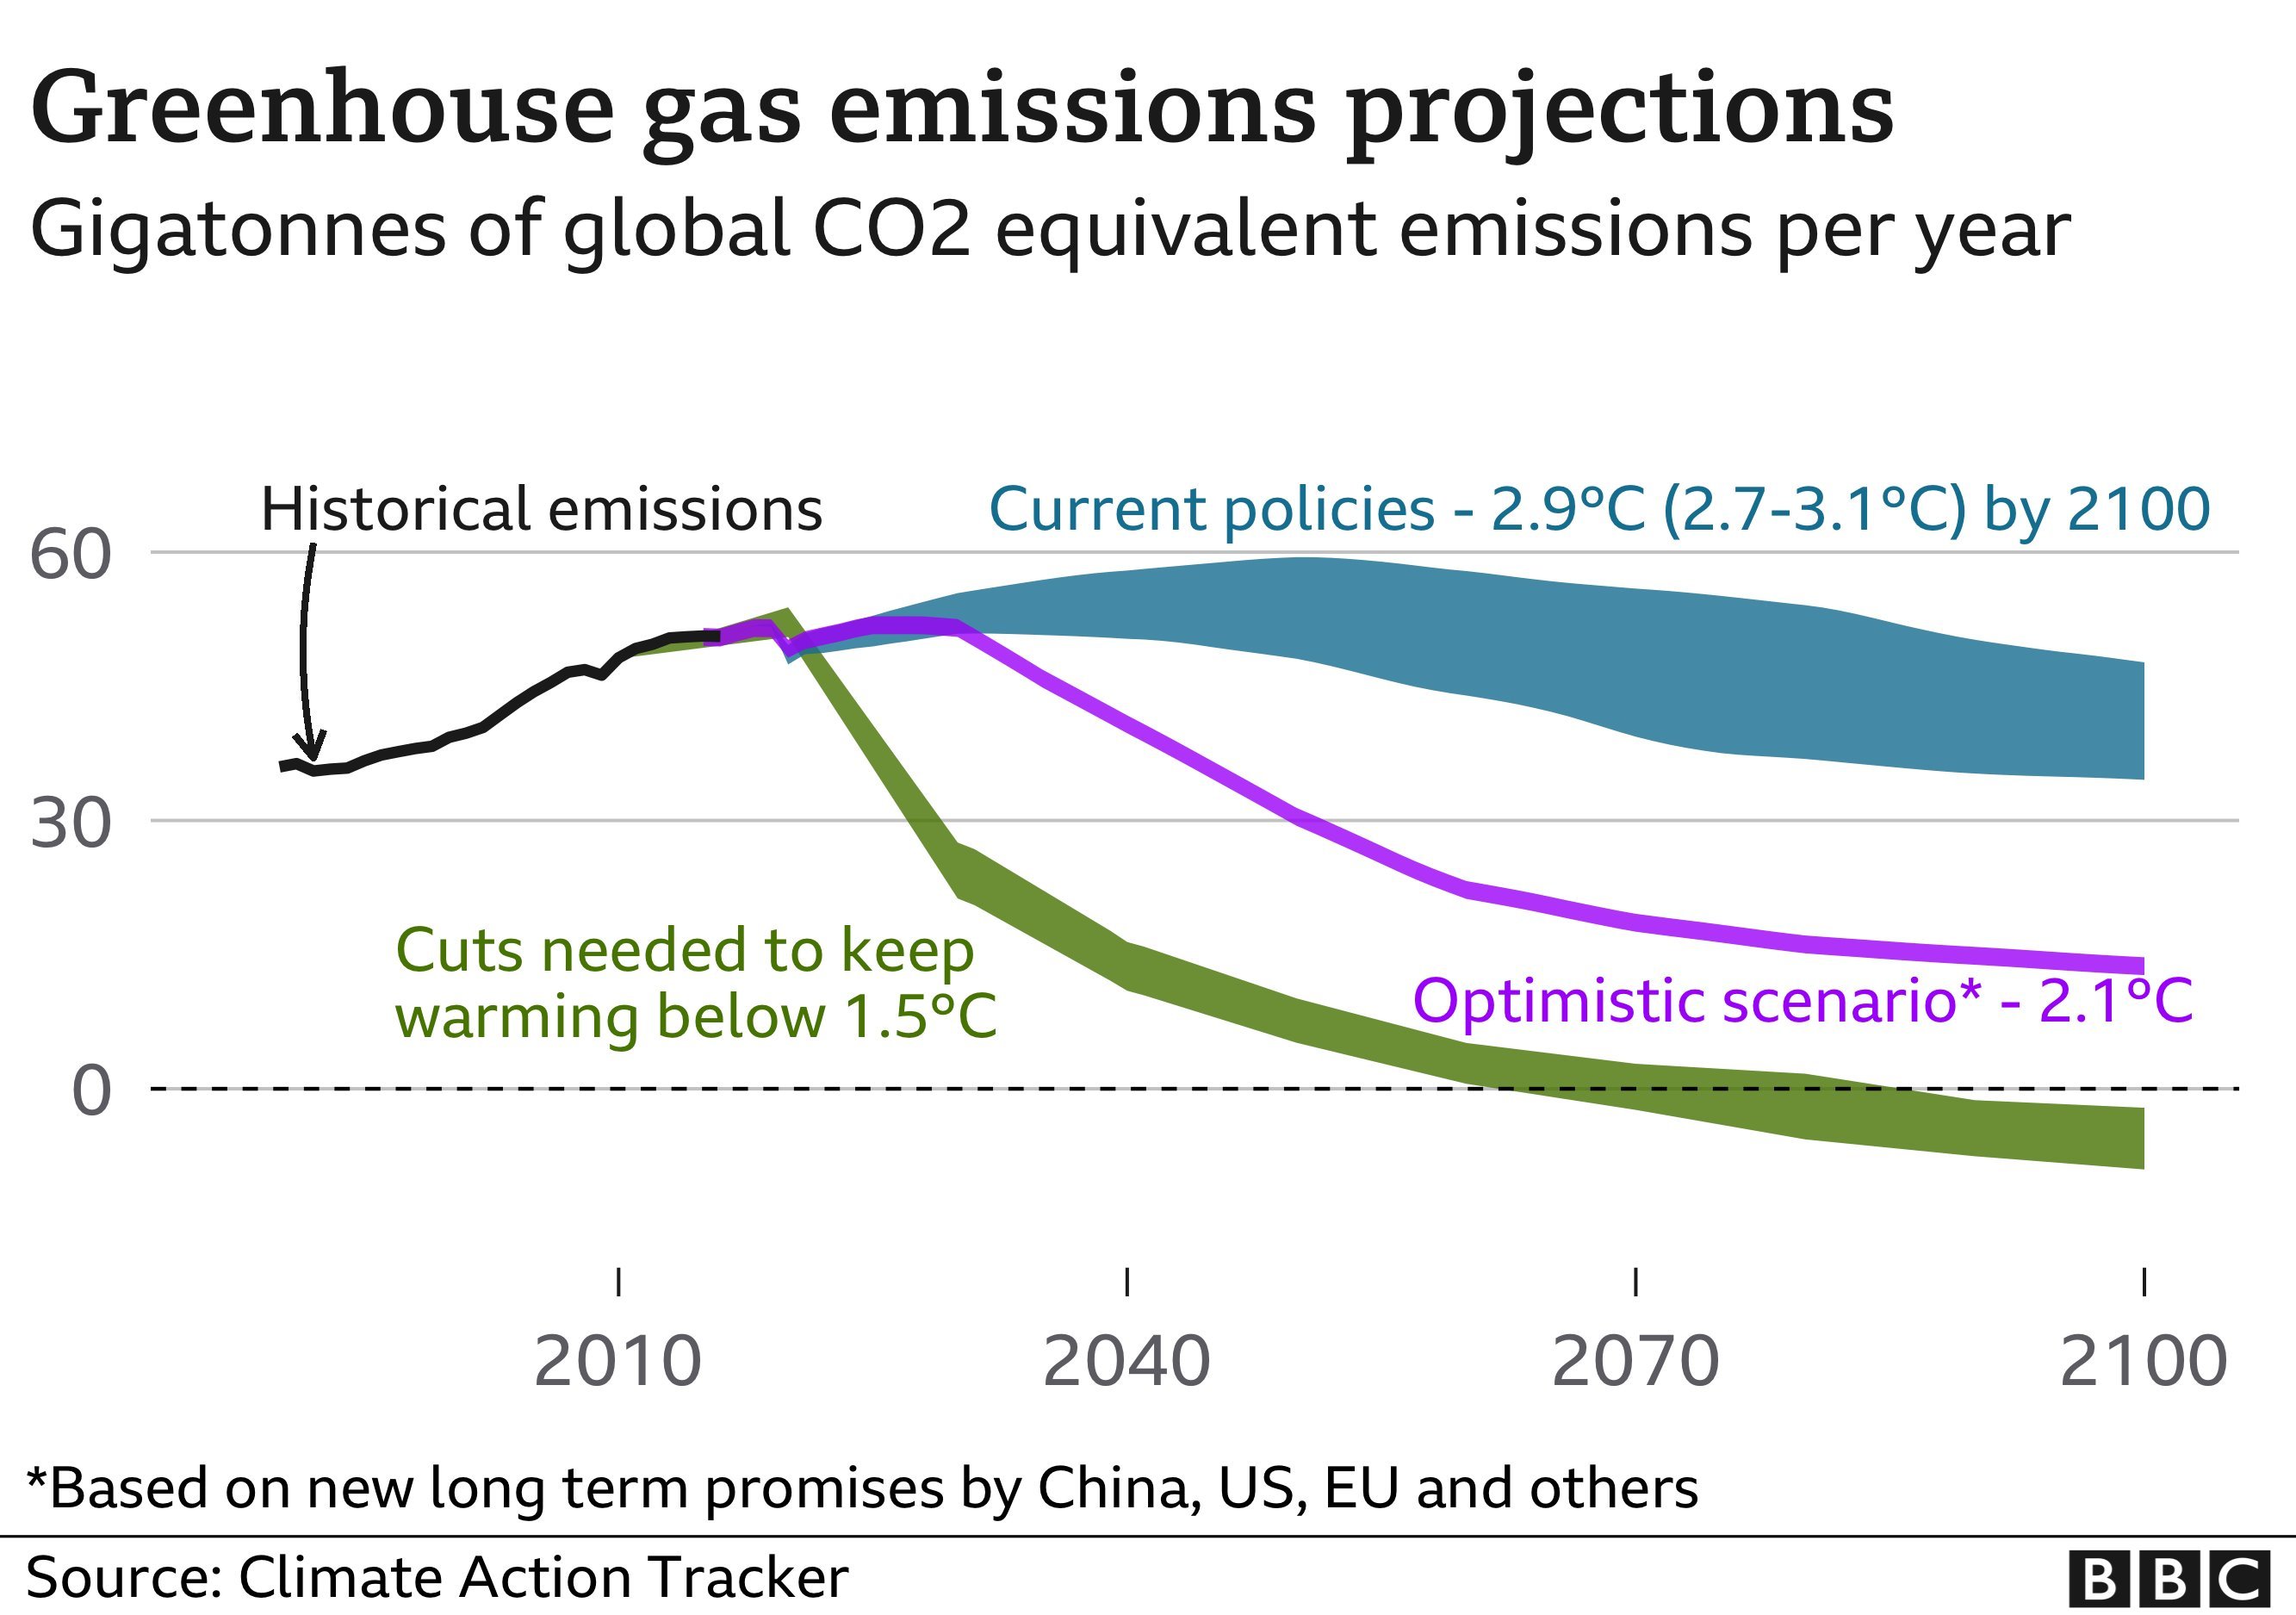 توقعات انخفاض الانبعاثات المسببة للاحتباس الحراري حتى عام 2100 وفقاً لتعهدات الصين والولايات المتحدة والاتحاد الأوروبي وآخرين